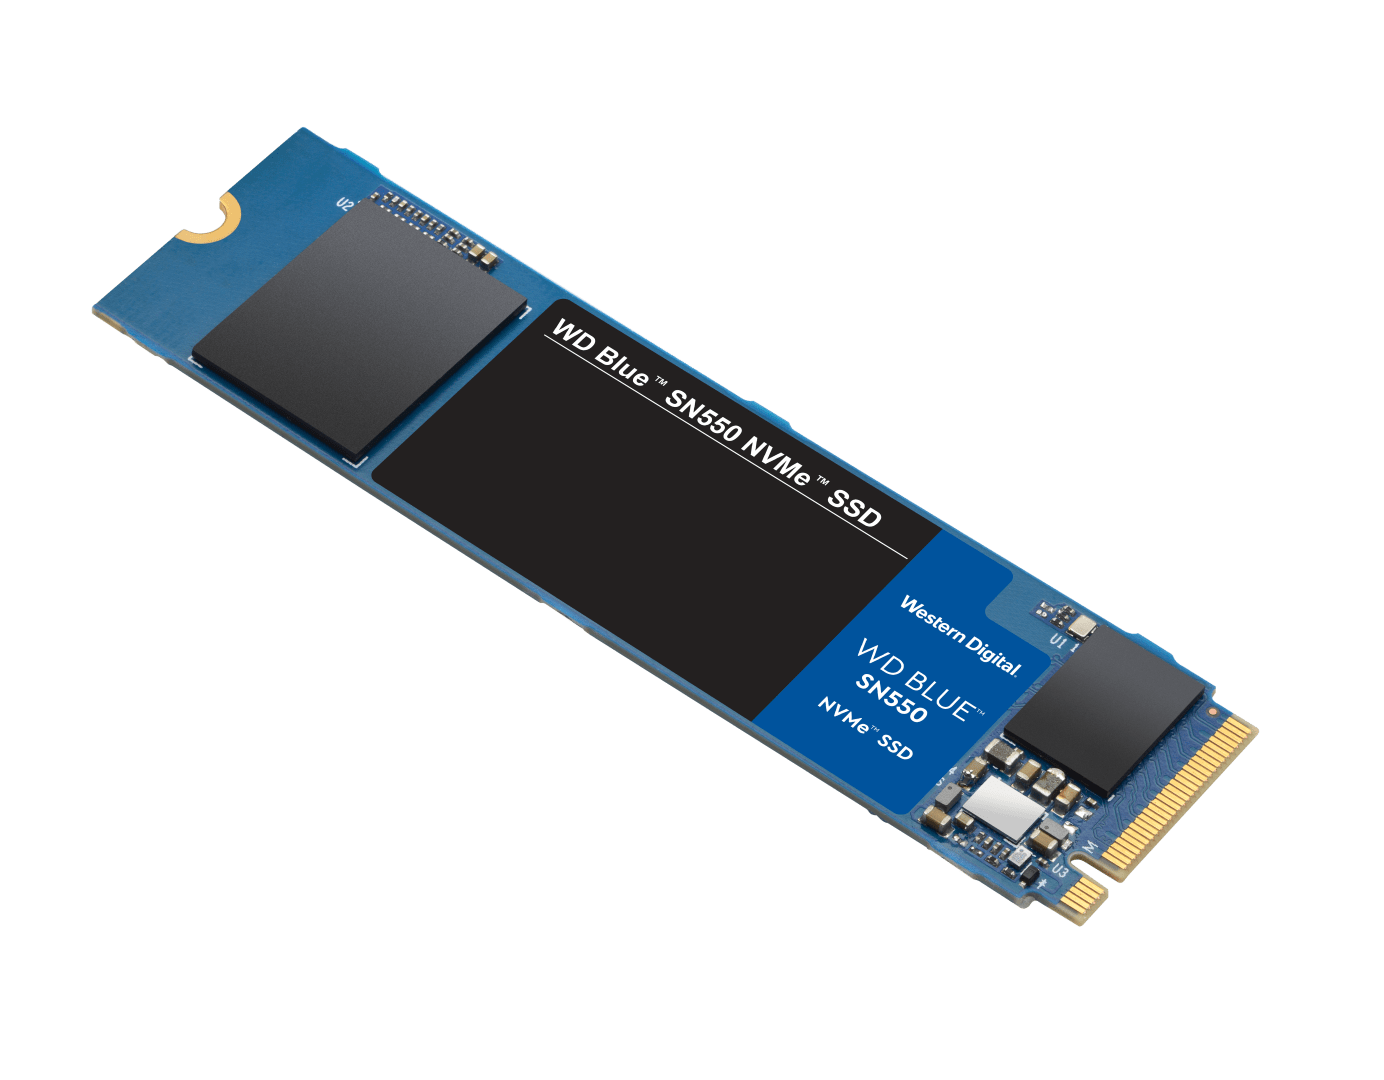 WD发布了新的NVMe 蓝碟 SN550容量高达1TB速度提高到24GB/s图片